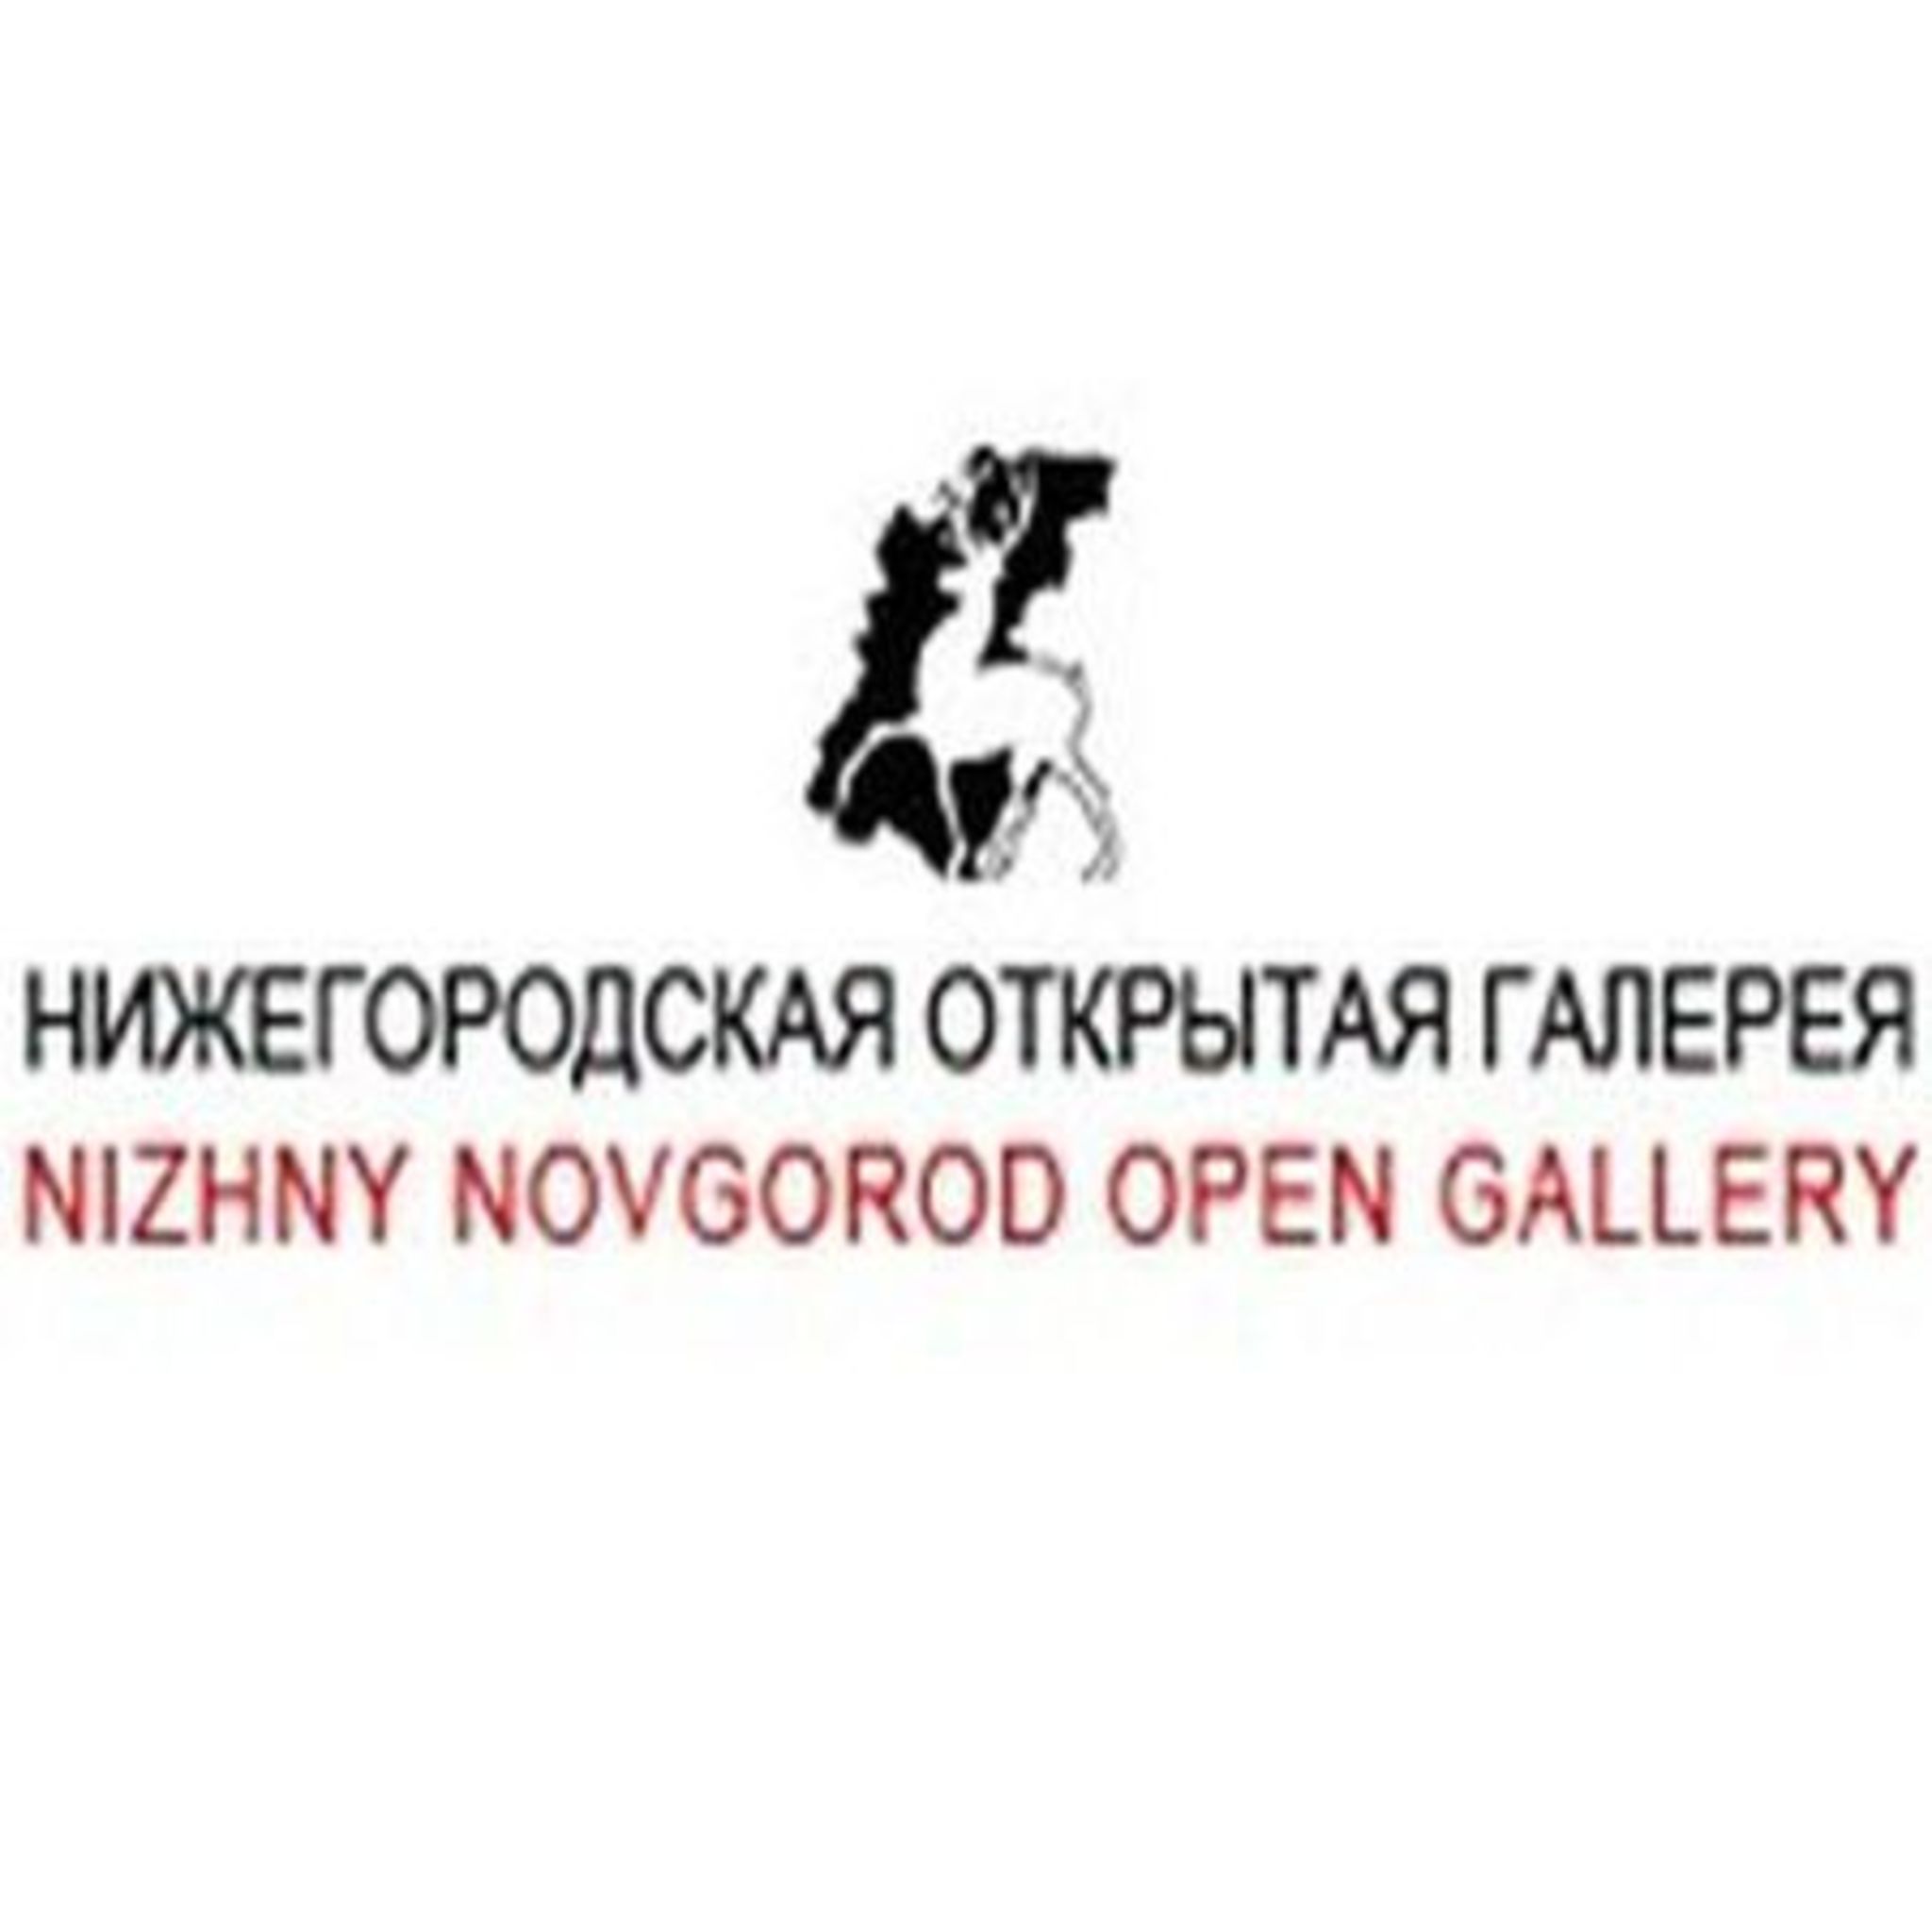 Nizhny Novgorod art gallery ART52